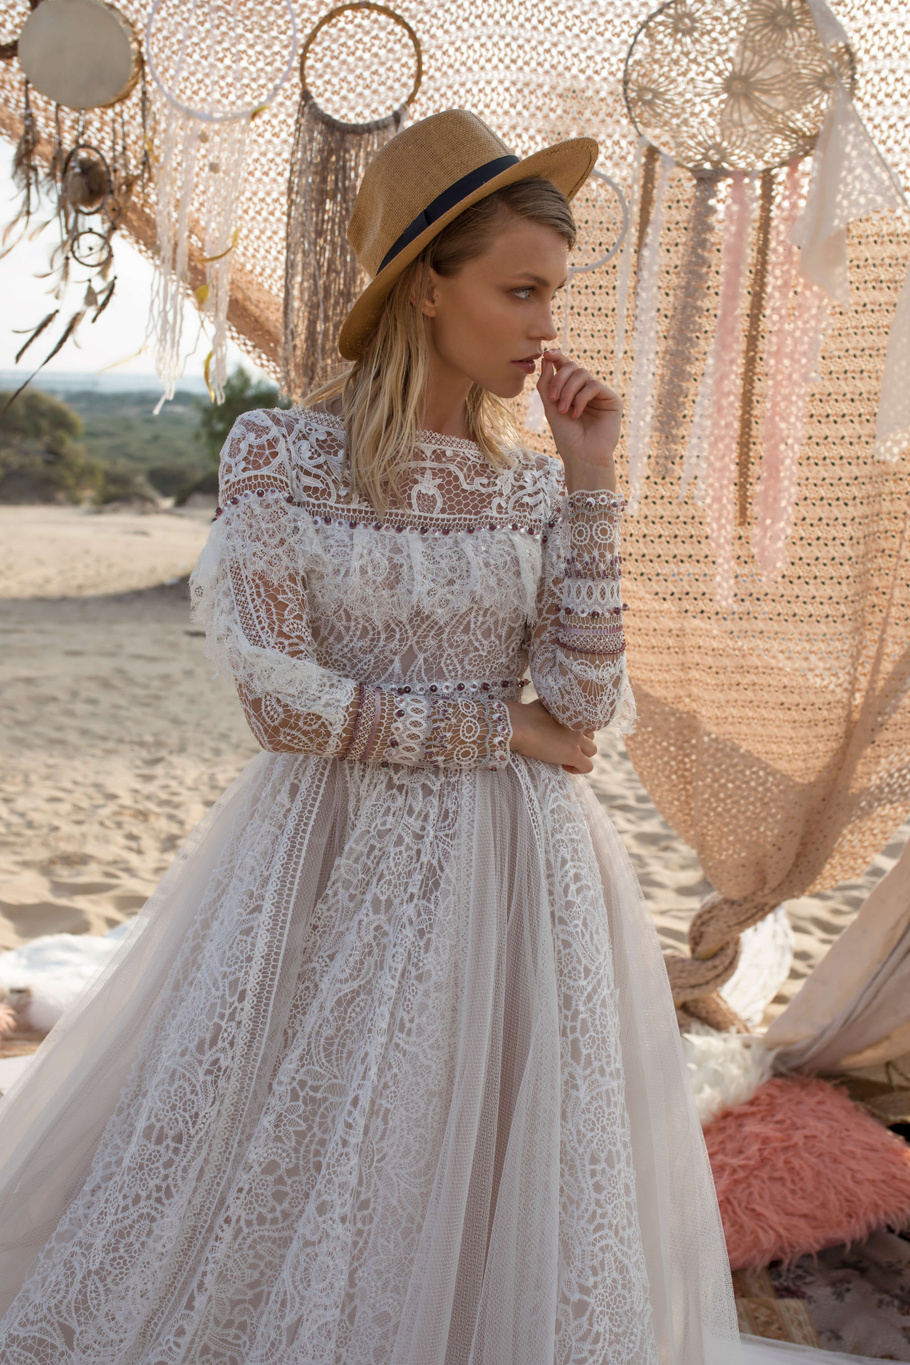 Купить свадебное платье «Альфи» Рара Авис из коллекции Вайлд Соул 2019 года в Екатеринбурге